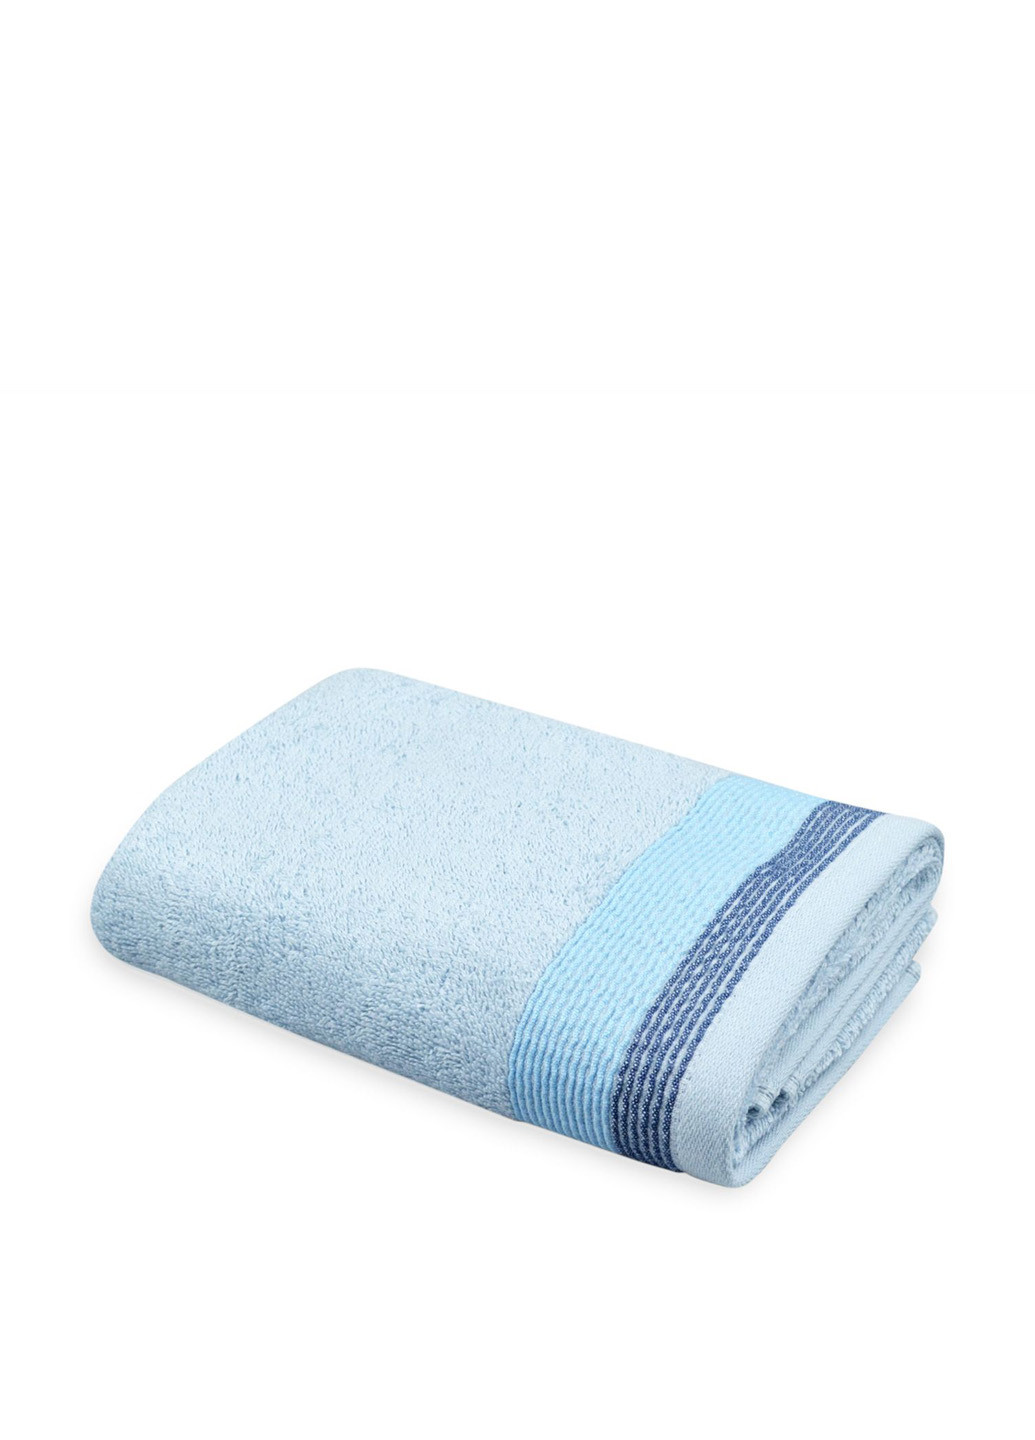 Home Line полотенце, 30х45 см полоска голубой производство - Узбекистан